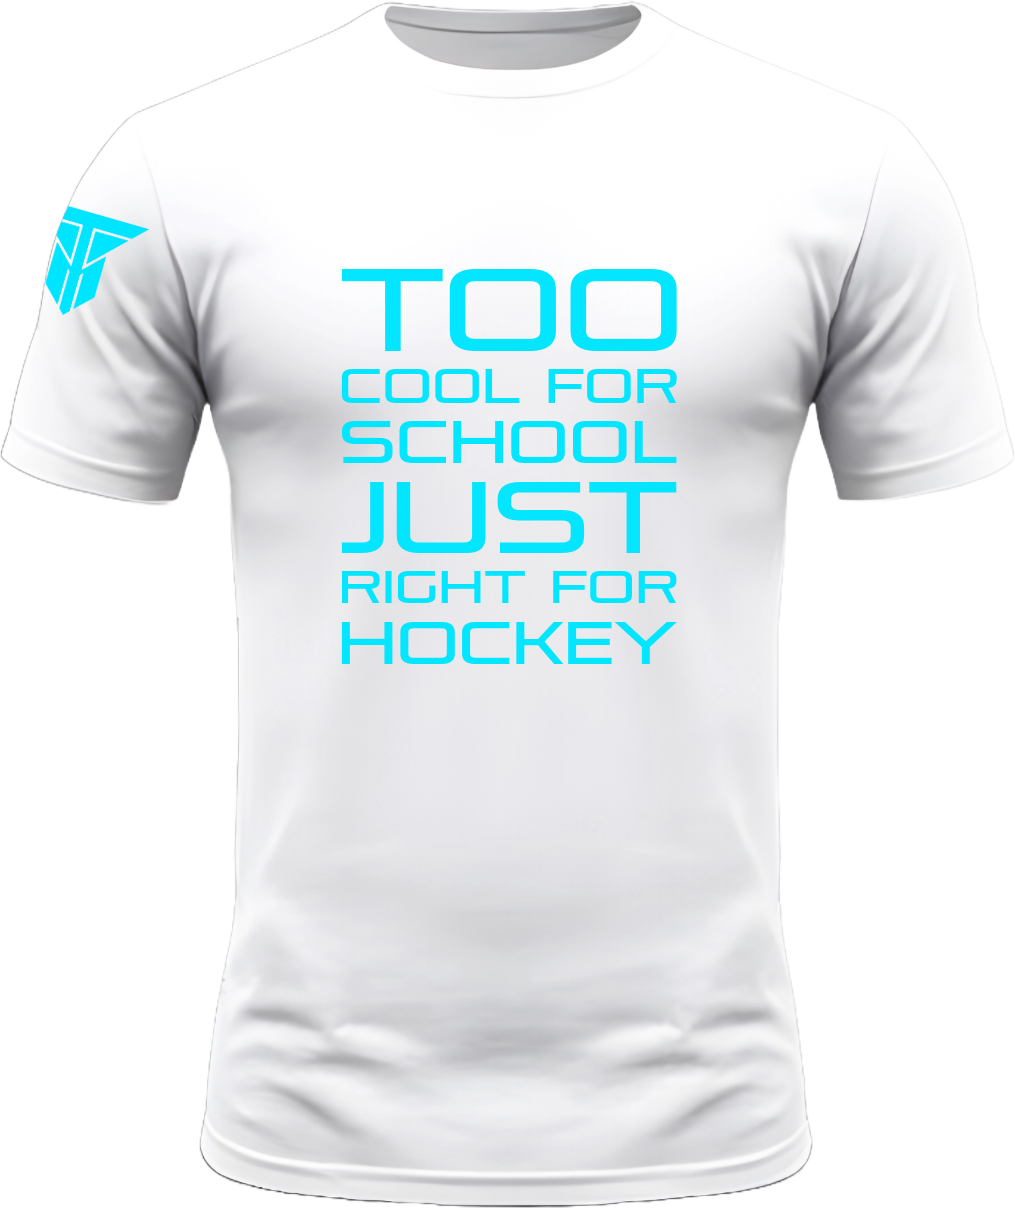 Too Cool 4 School T-Shirt